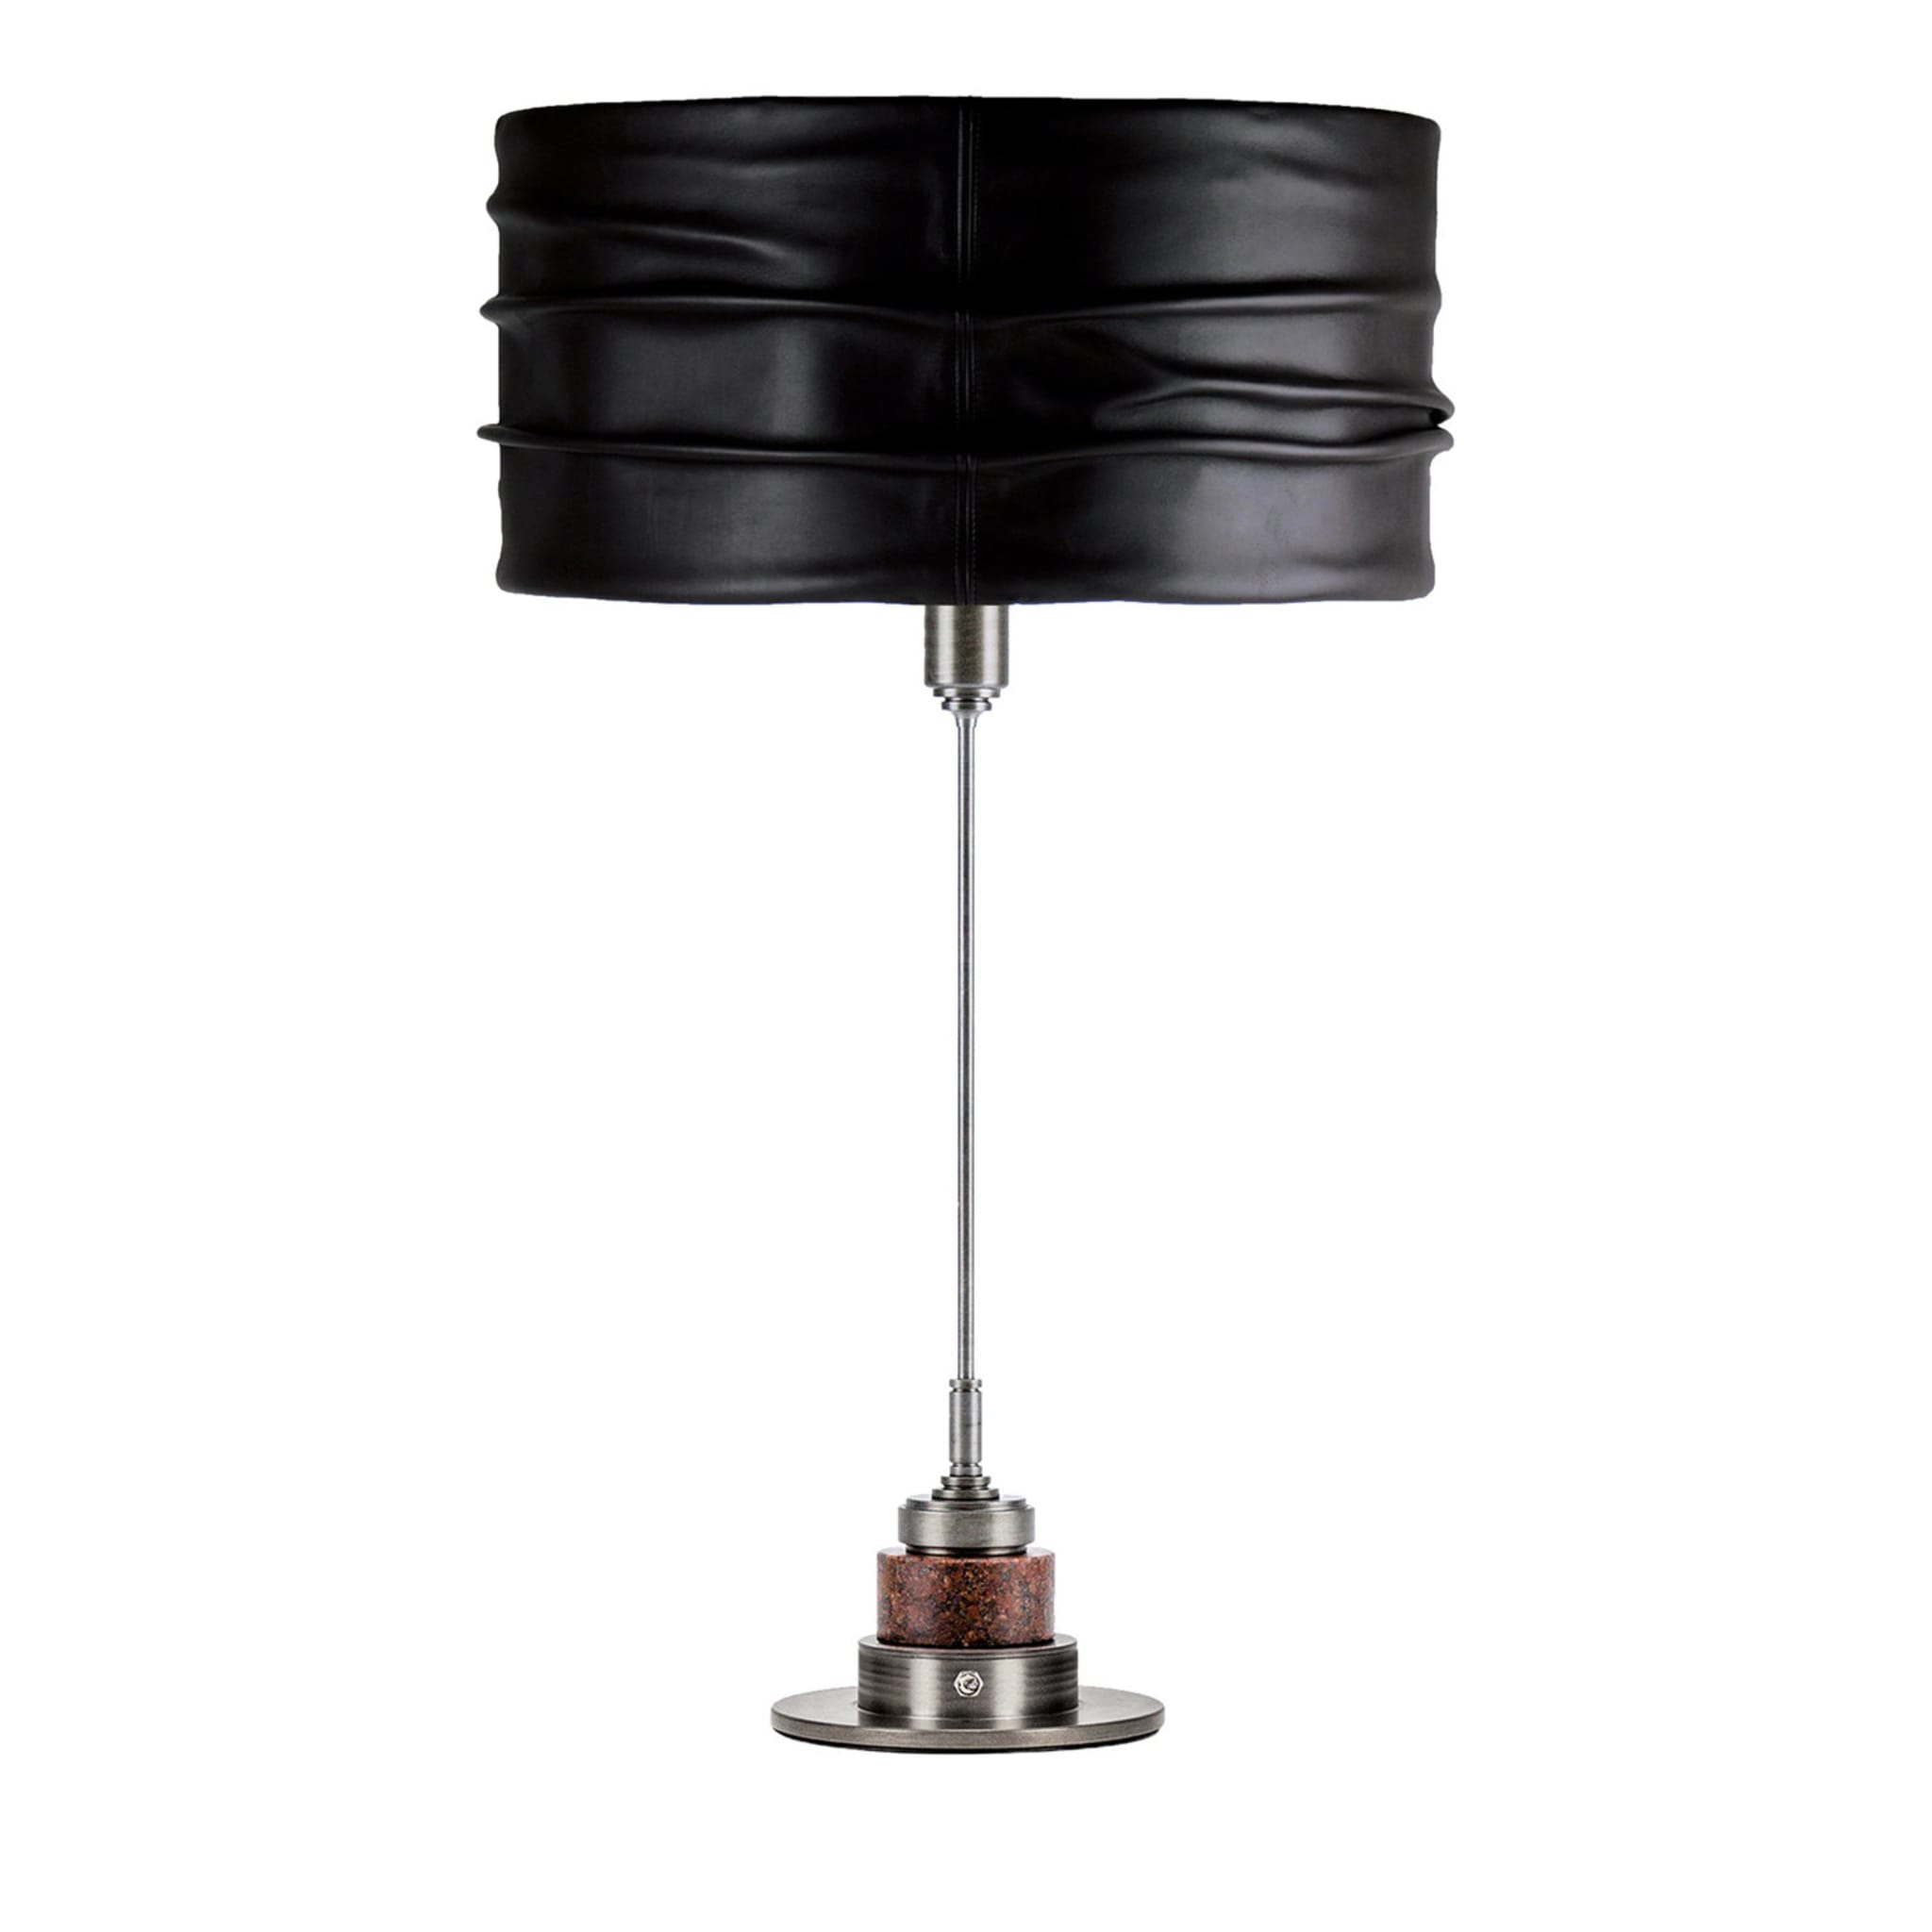 Eos lampe de table en cuir noir - Vue principale